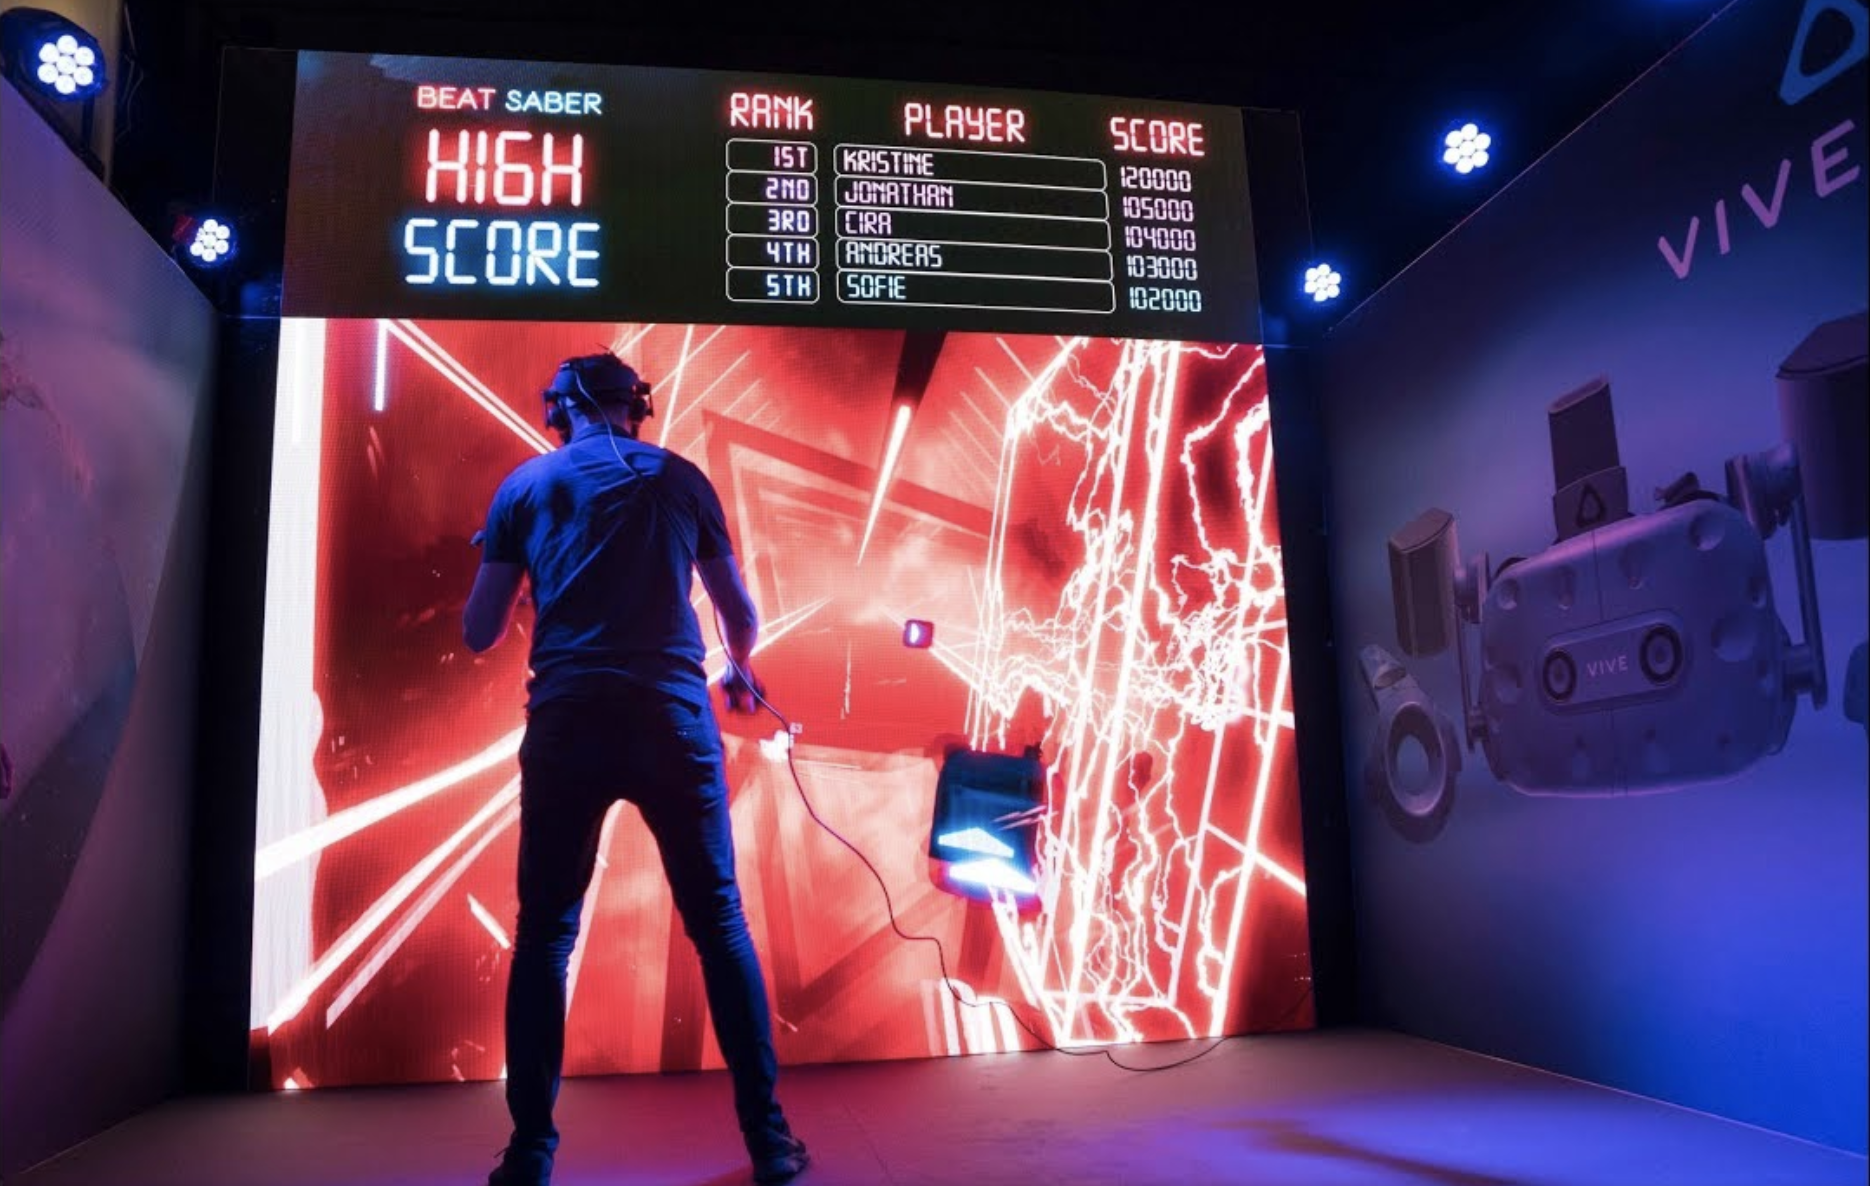 Euroopan parhaan VR-kokemuksen luominen HTC VIVEn & BEAT SABERin kanssa